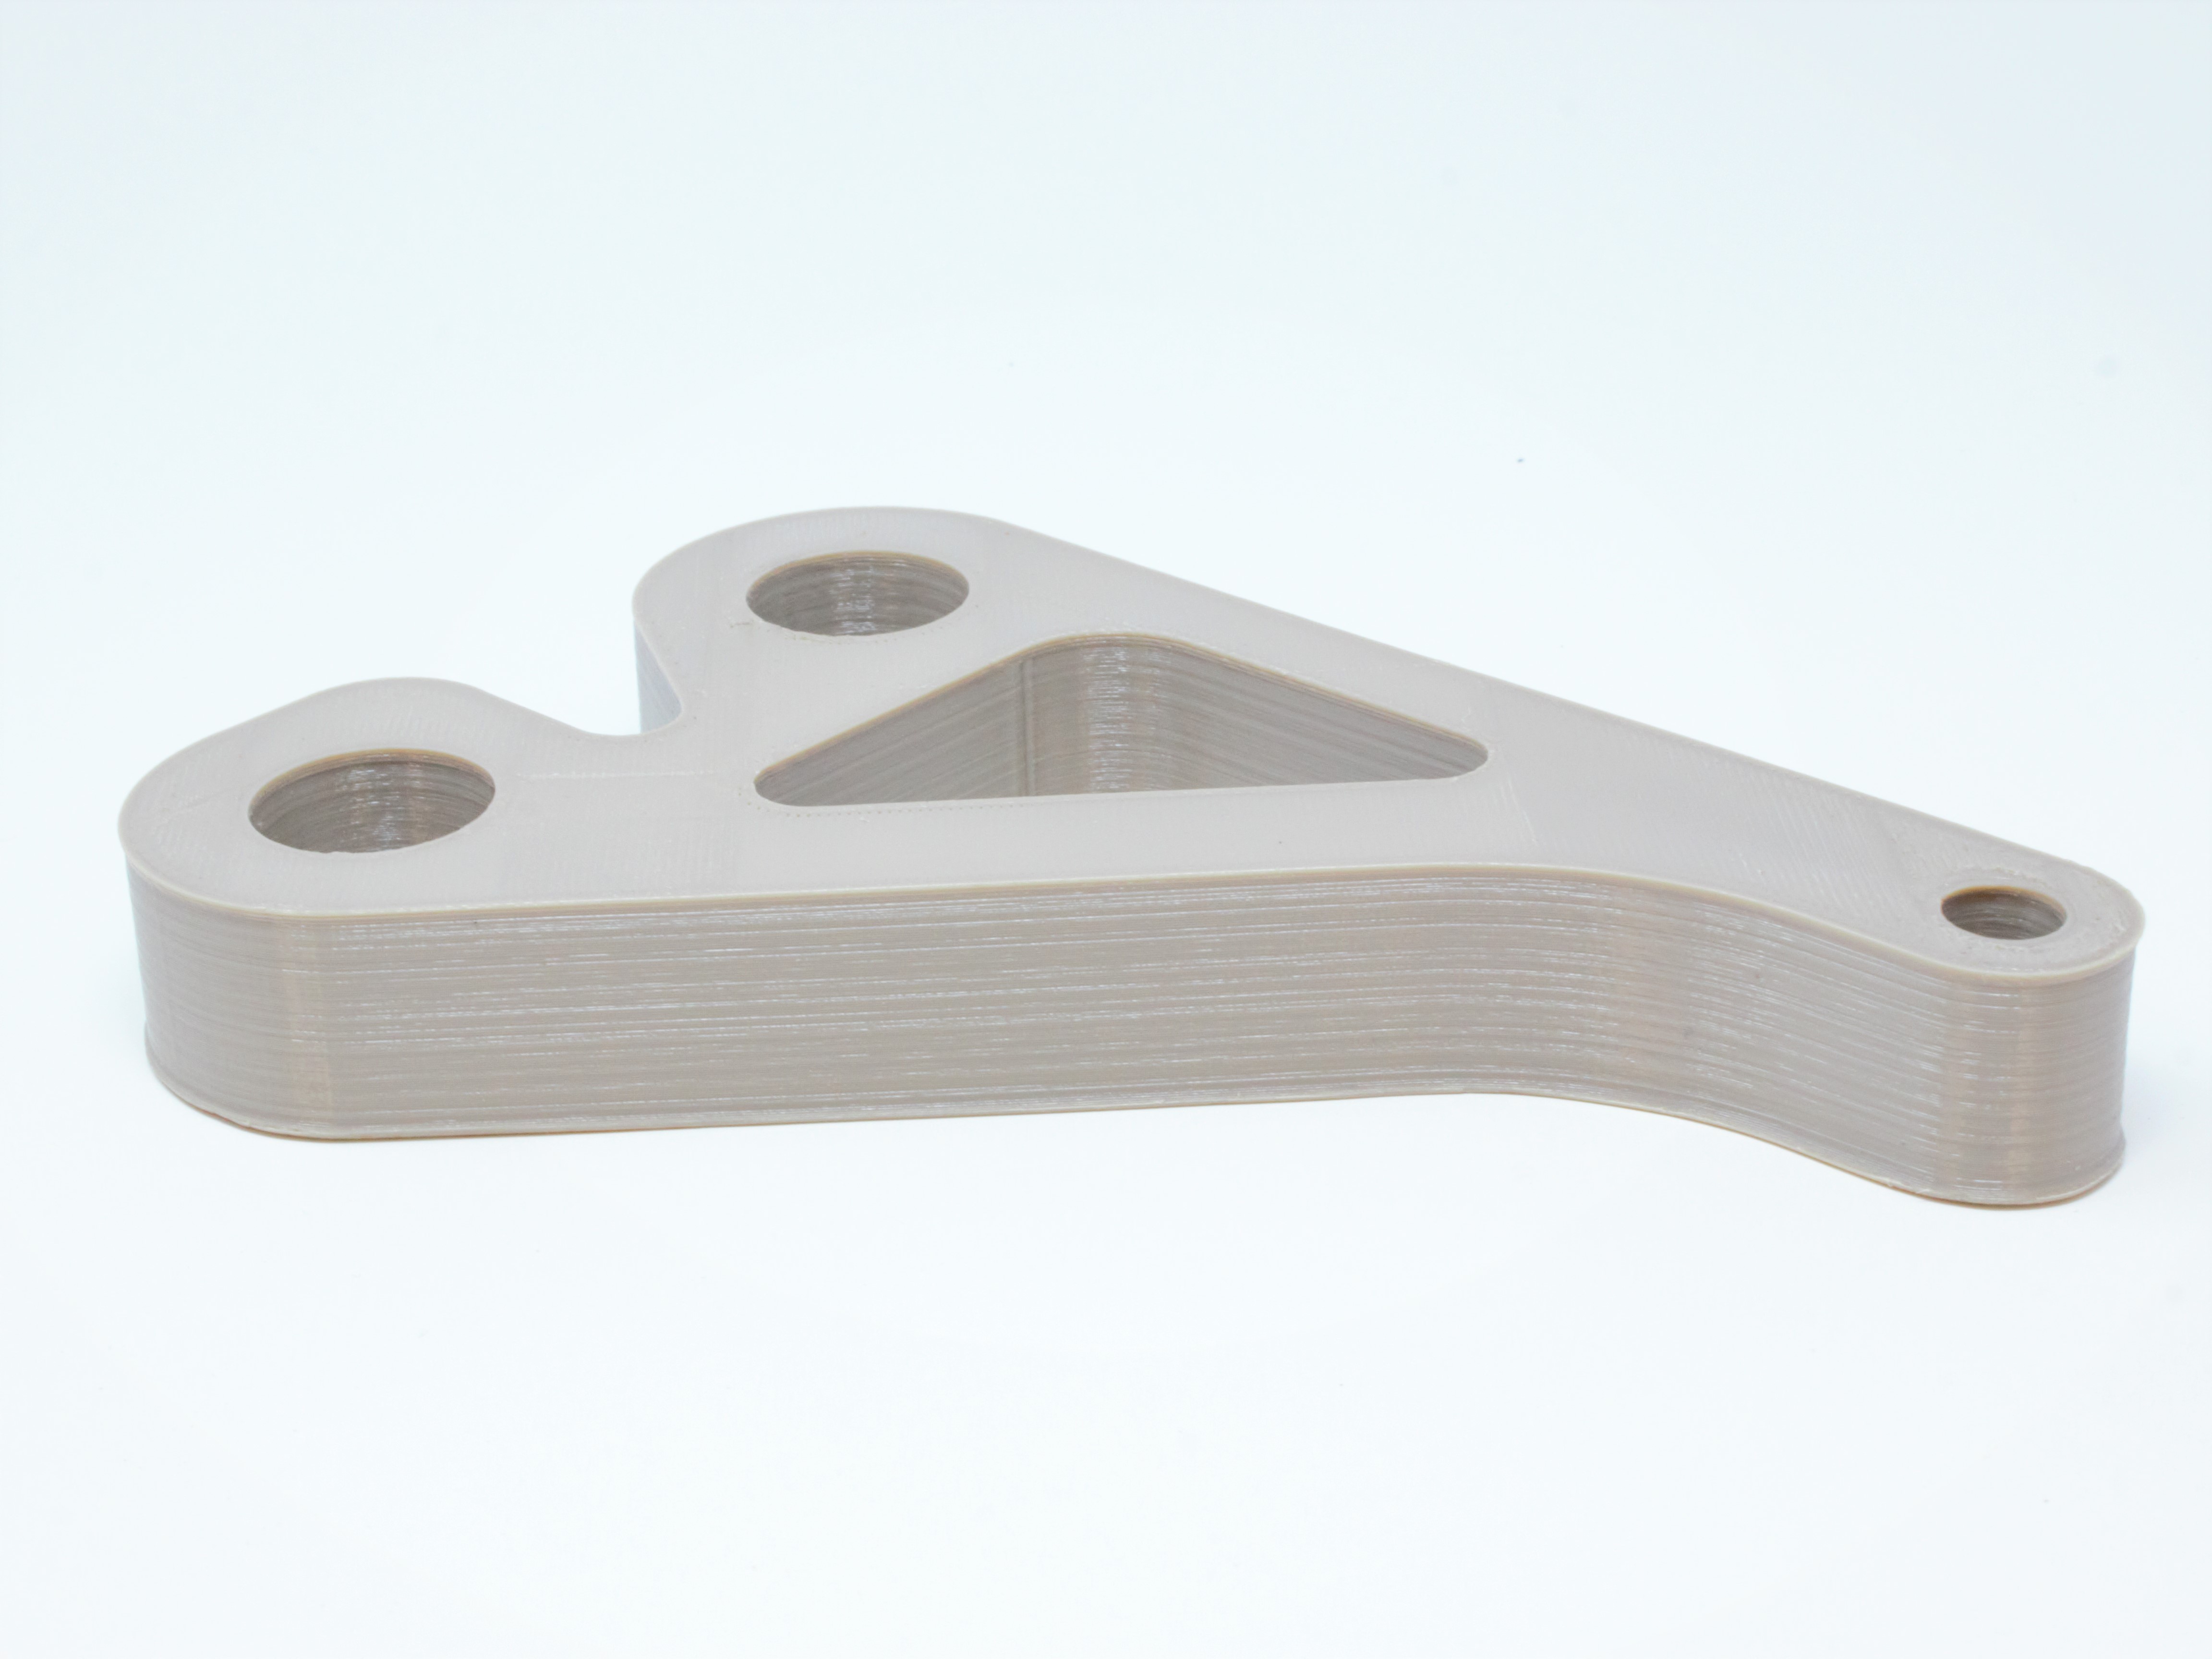 Pin bracket developed in Essentium's new PEEK material. Photo via Essentium.